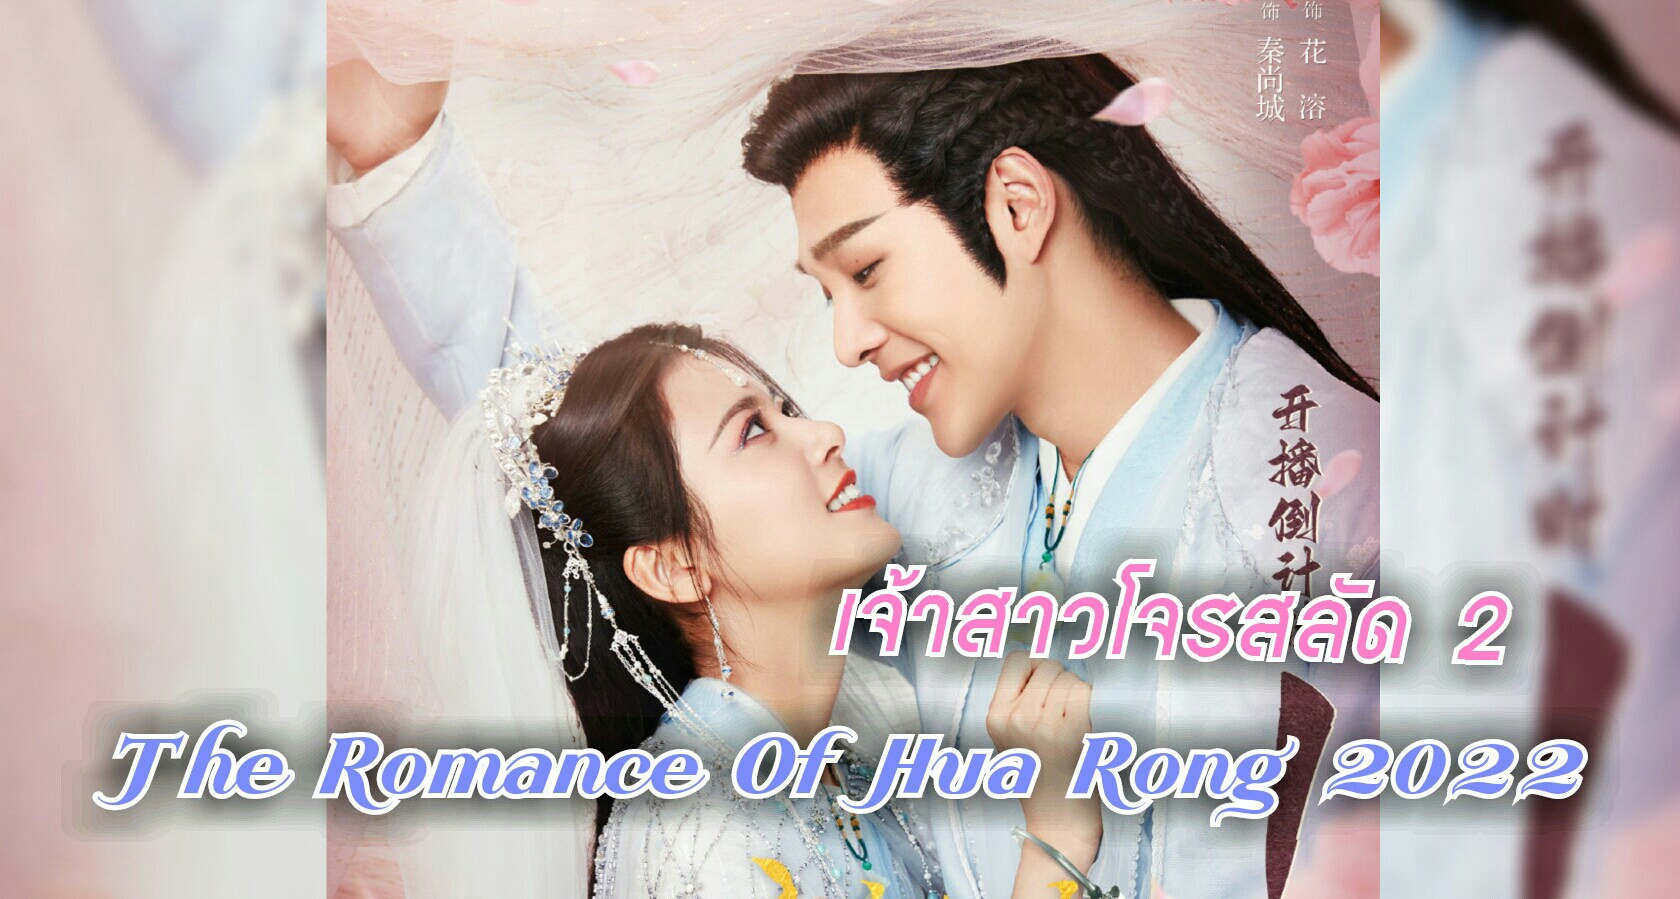 ชวนดูซีรีส์ เจ้าสาวโจรสลัด 2 "The Romance of Hua Rong 2" 